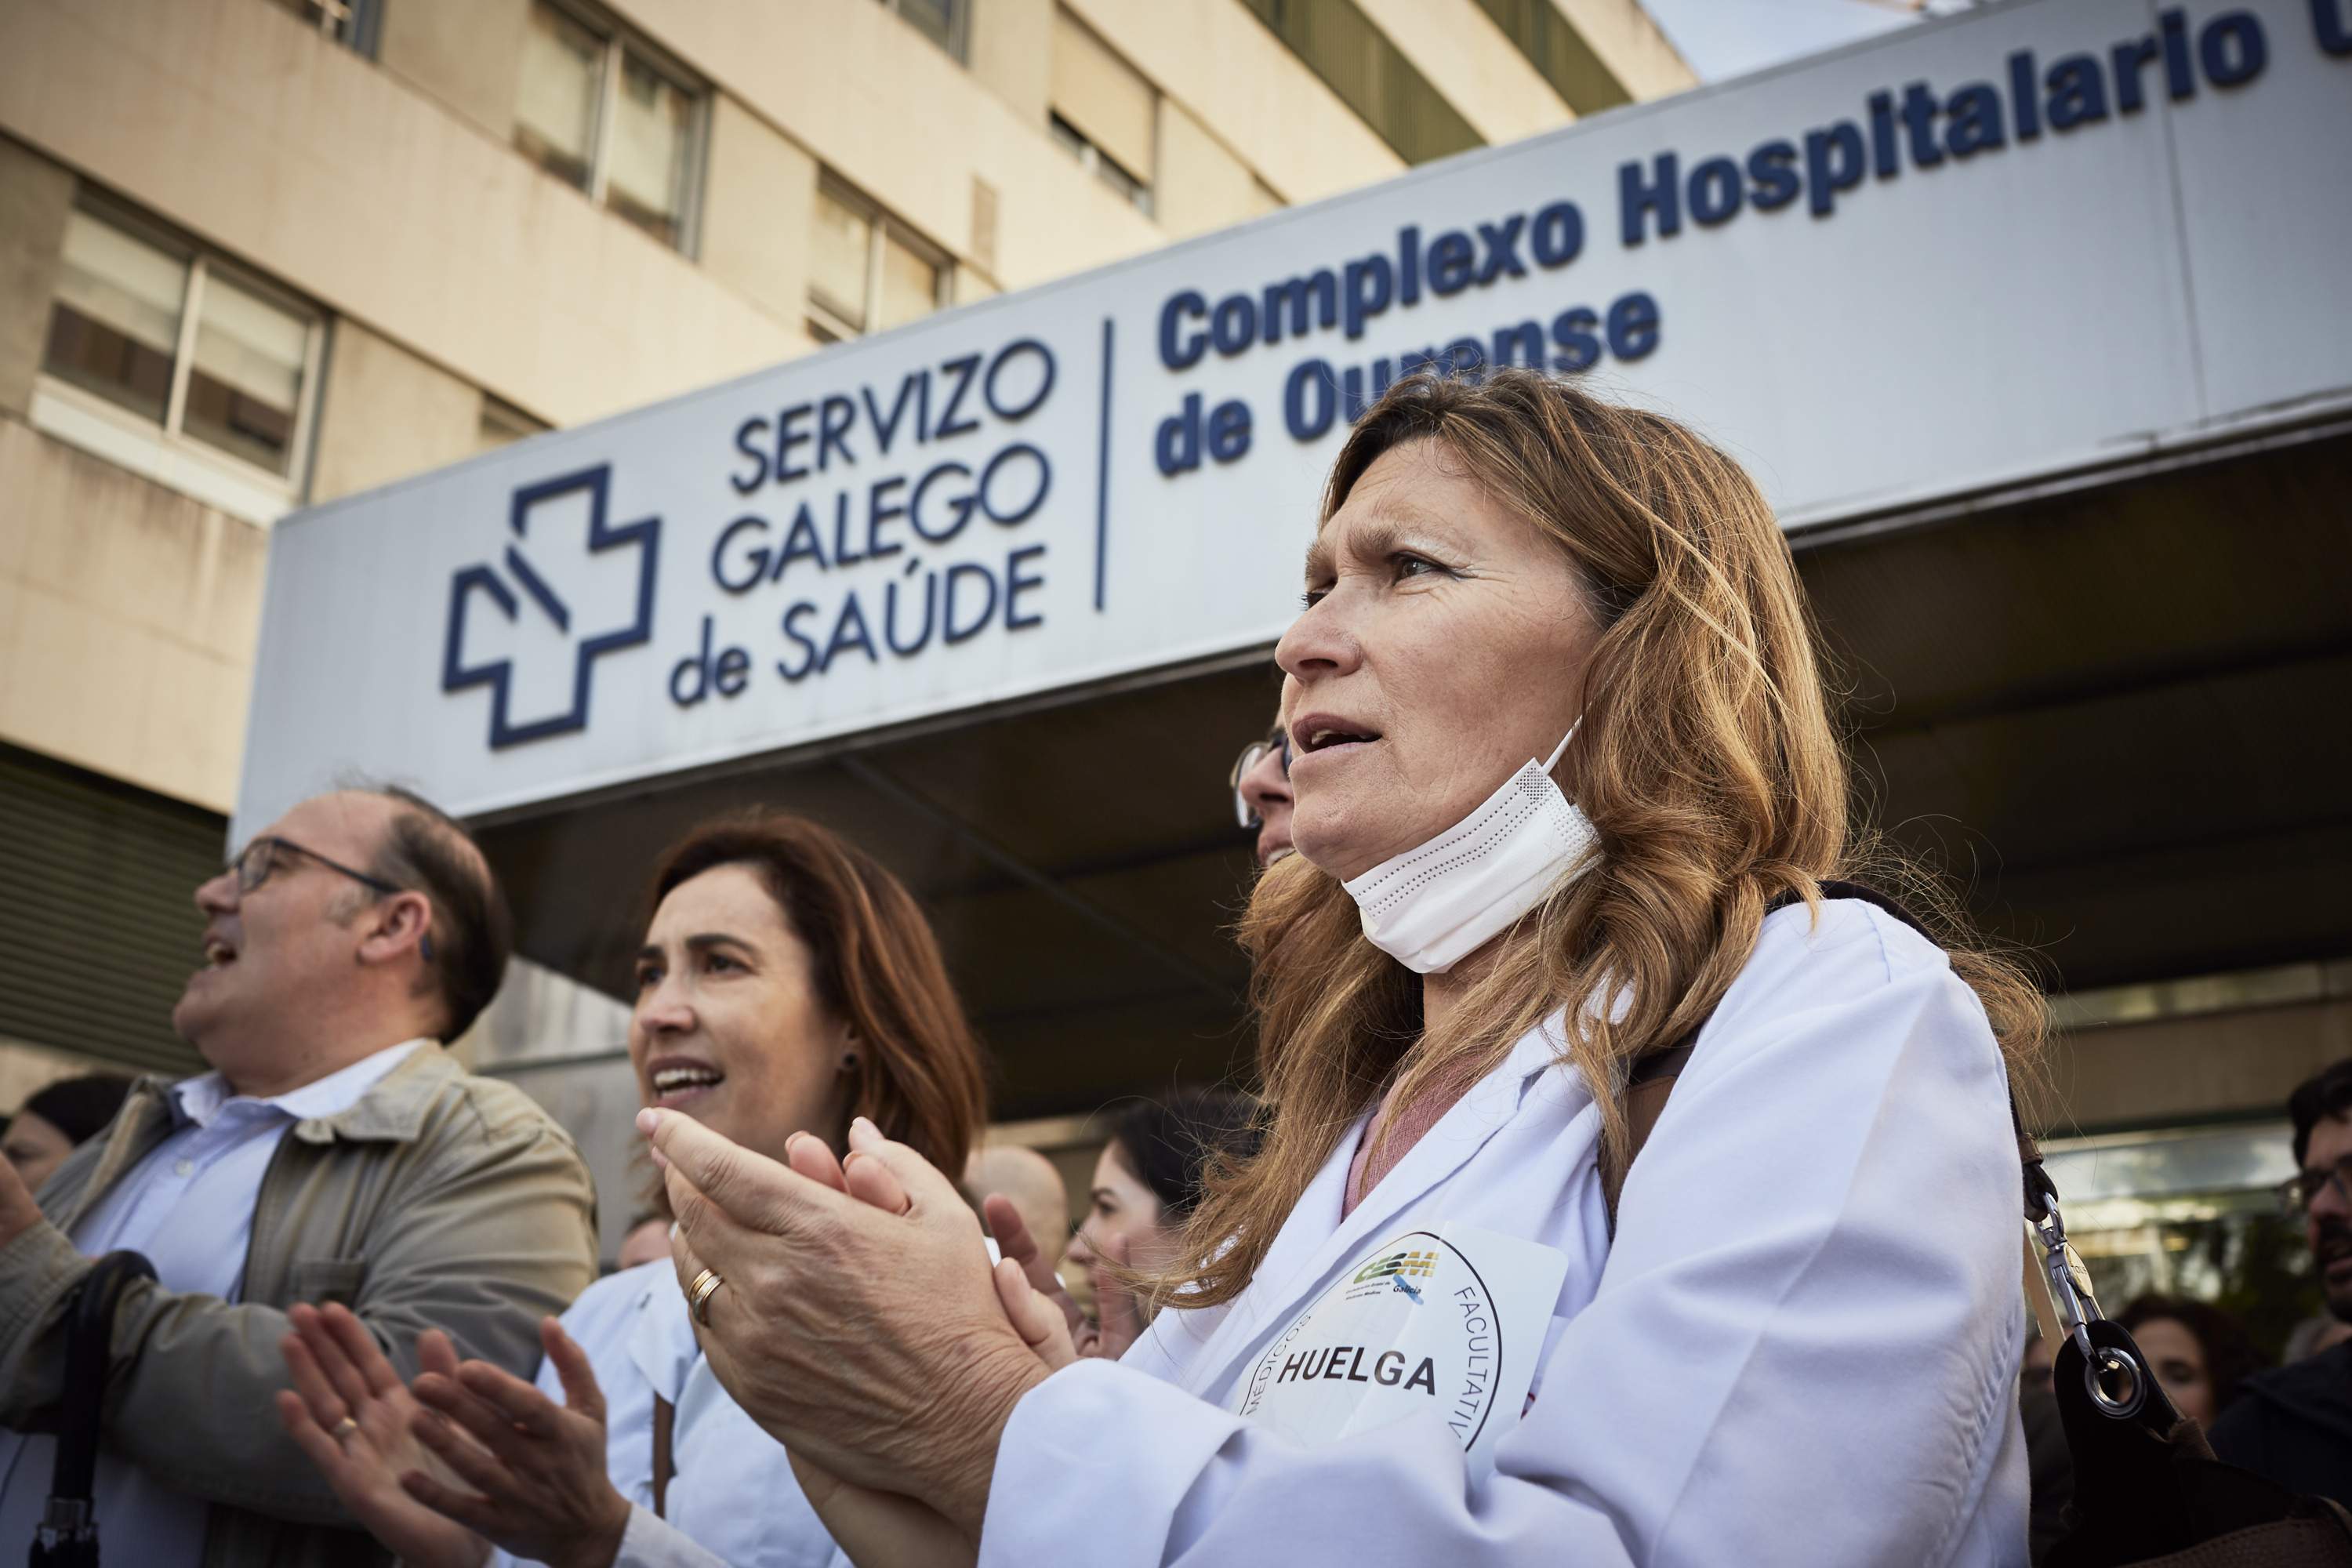 La Xunta de Galicia anuncia por SMS un aumento de sueldo al personal sanitario a dos días de las elecciones